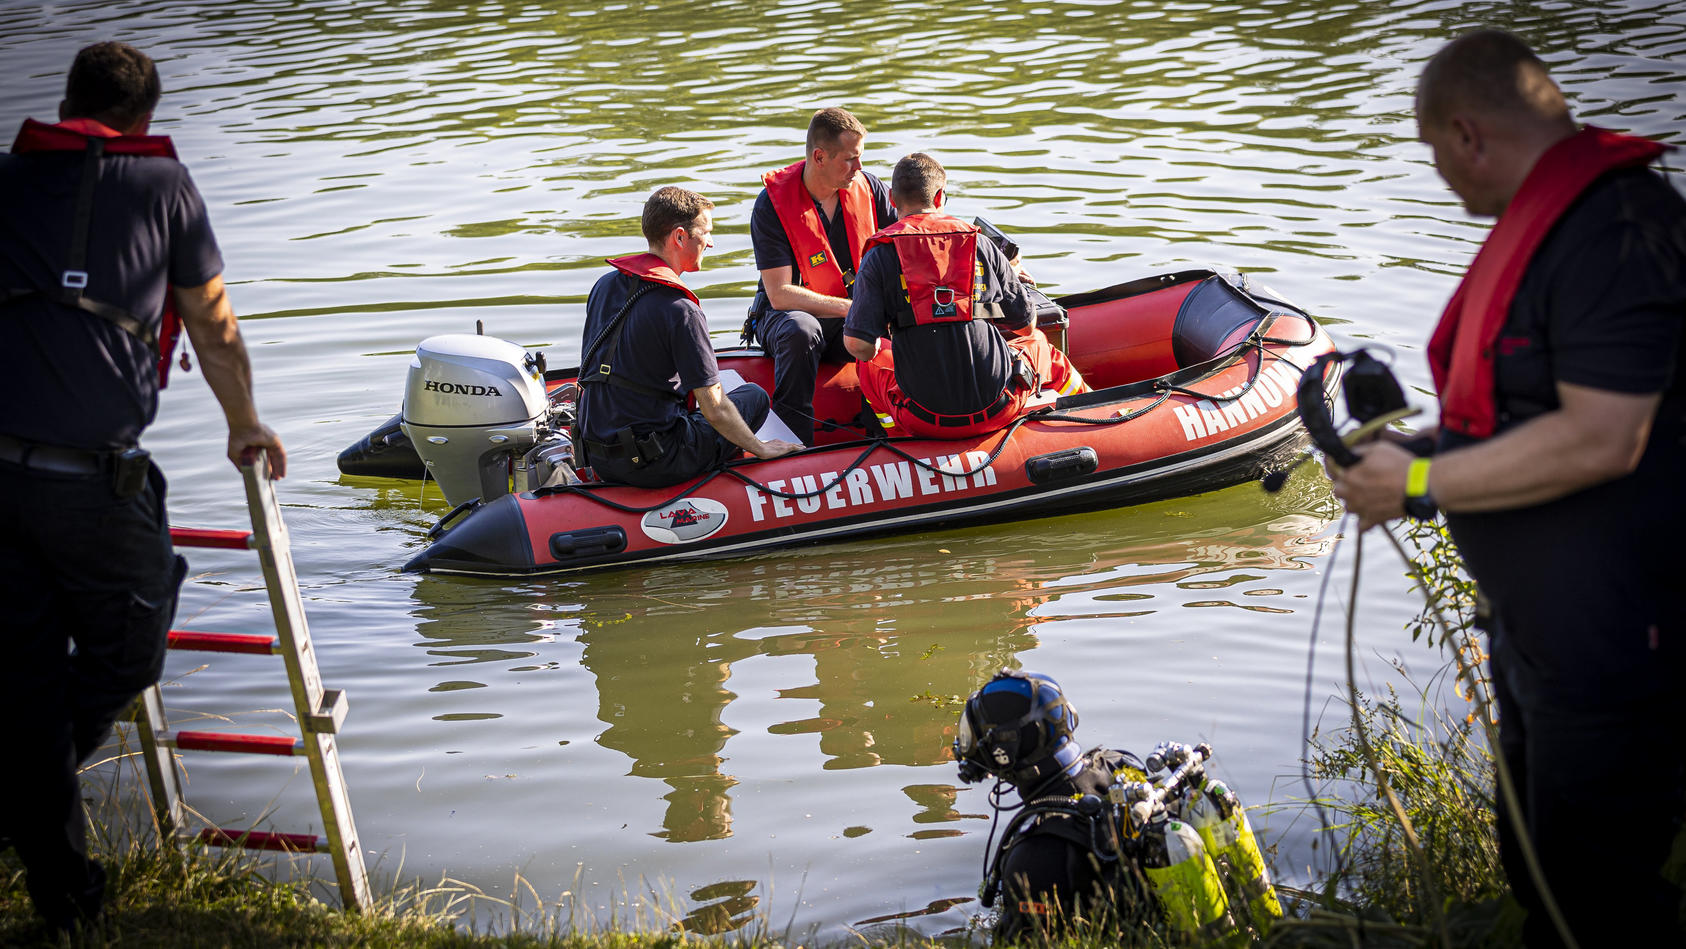 30.06.2022, Niedersachsen, Hannover: Einsatzkräfte sind in einem Boot im Wasser vom Dreiecksteich unterwegs. In dem Baggersee ist ein Mann ertrunken. Foto: Moritz Frankenberg/dpa +++ dpa-Bildfunk +++